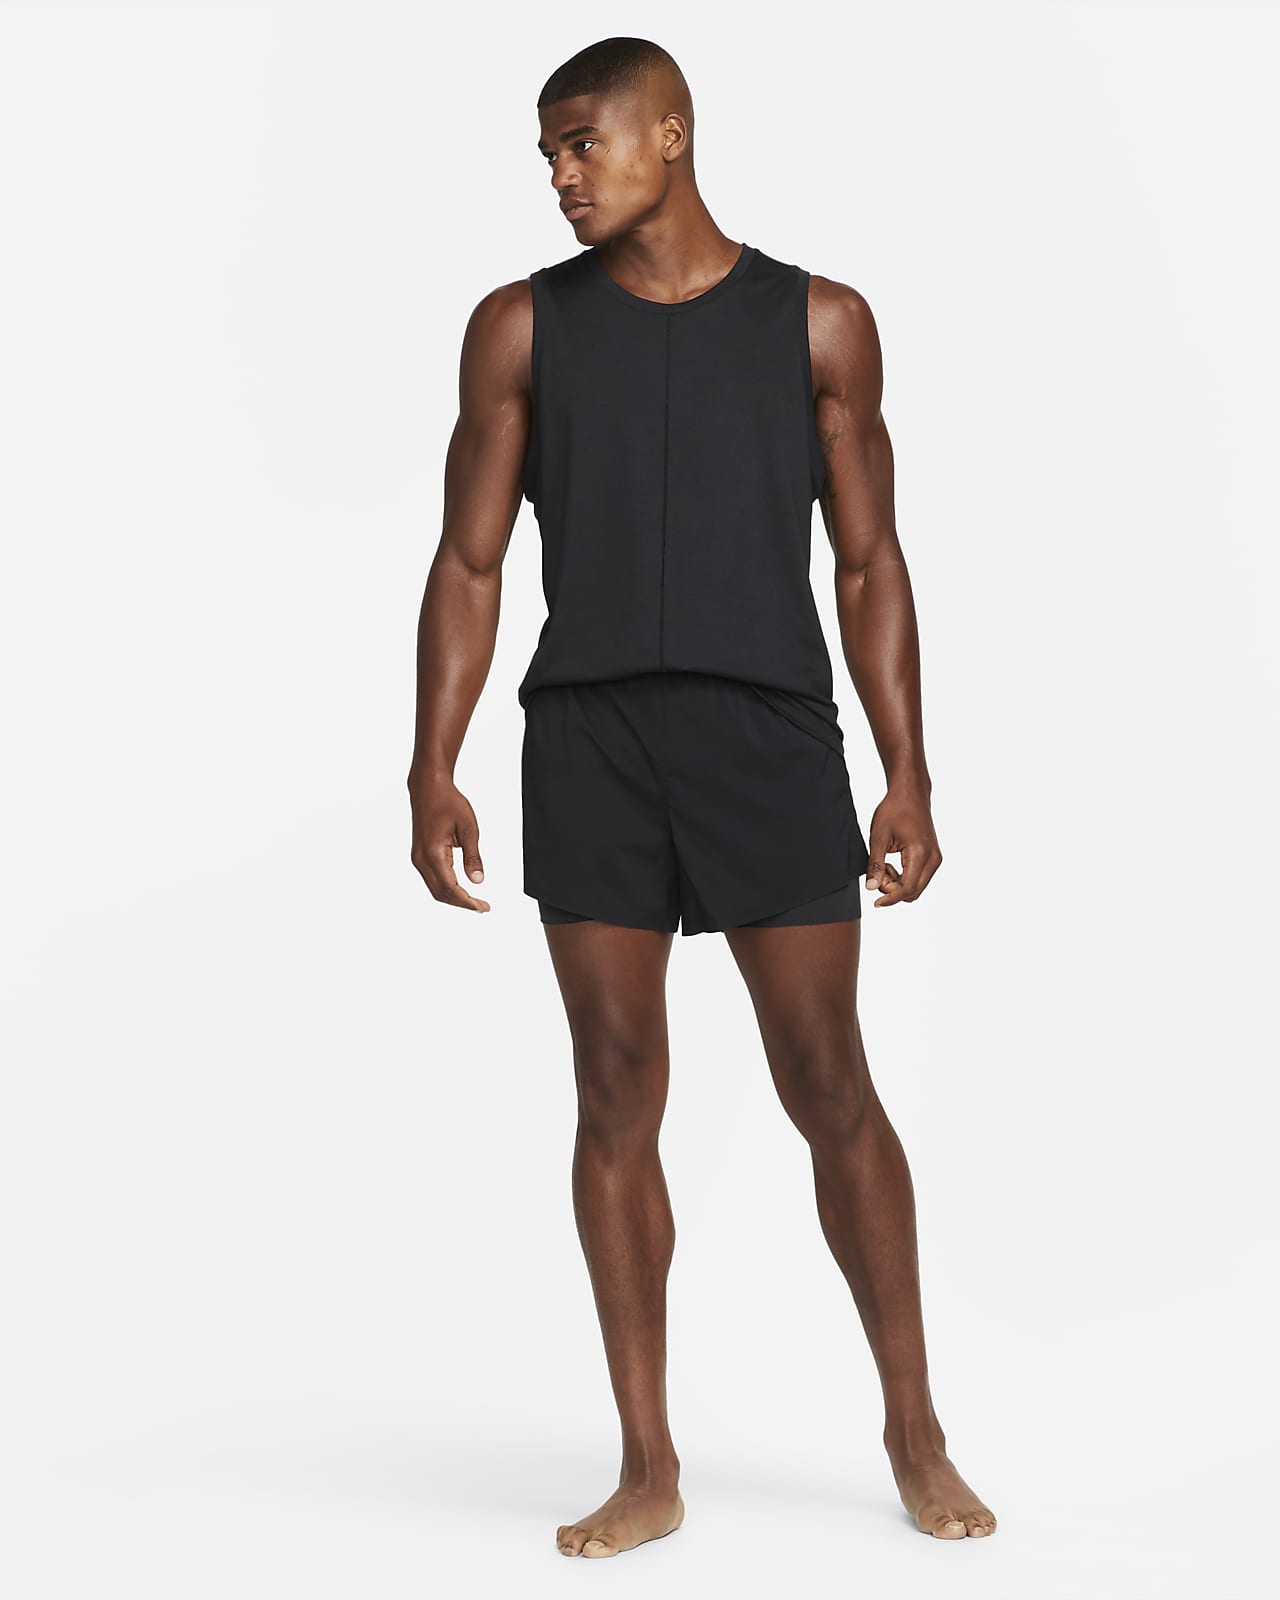 Nike Yoga Men's Hot Yoga Shorts. Nike SE